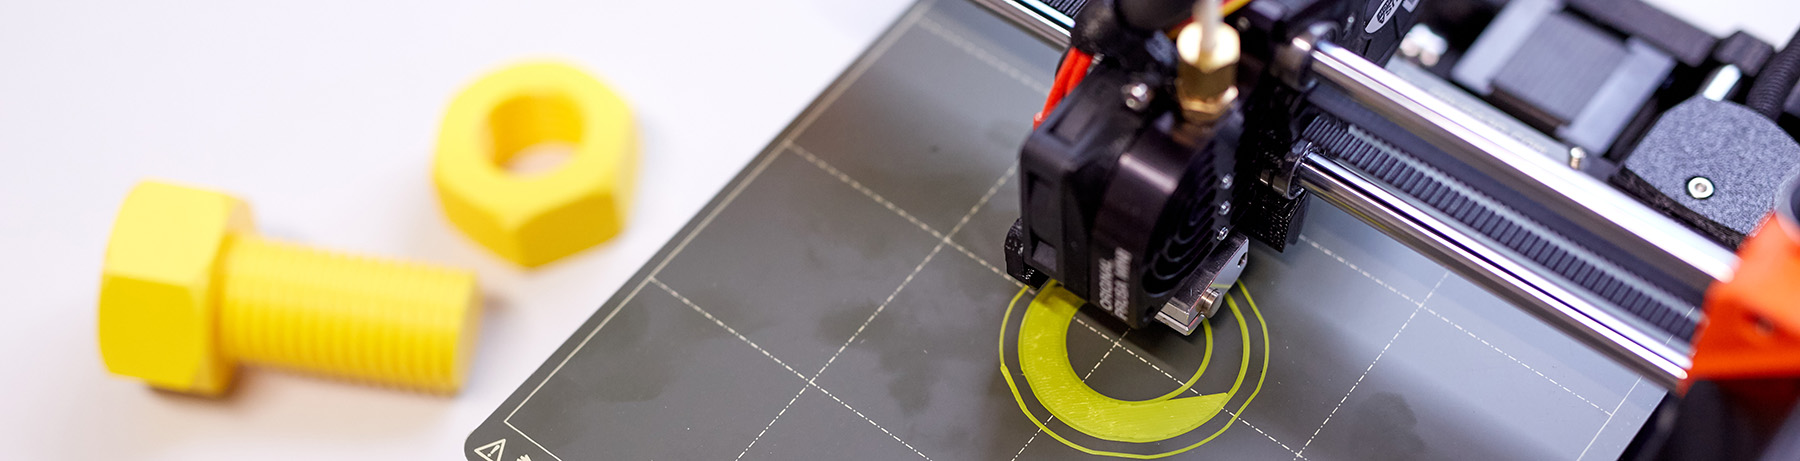 3D Drucker druckt eine Schraube